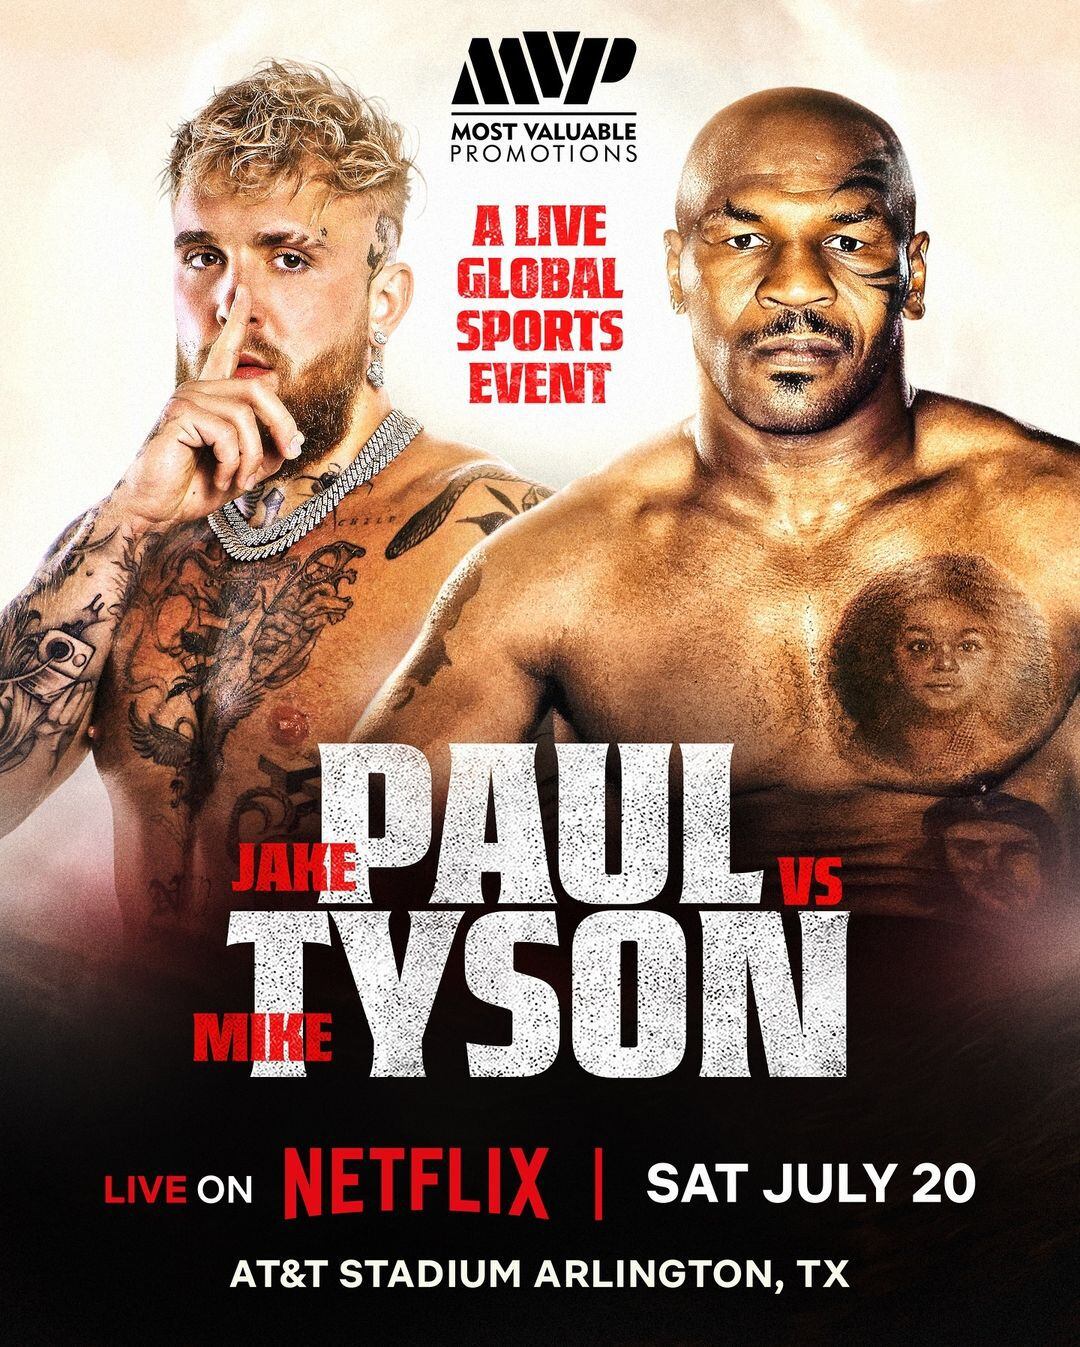 Mike Tyson se enfrentará a Jake Paul en un encuentro de boxeo que se llevará a cabo en el estadio AT&T, situado en Arlington, Texas, Estados Unidos.